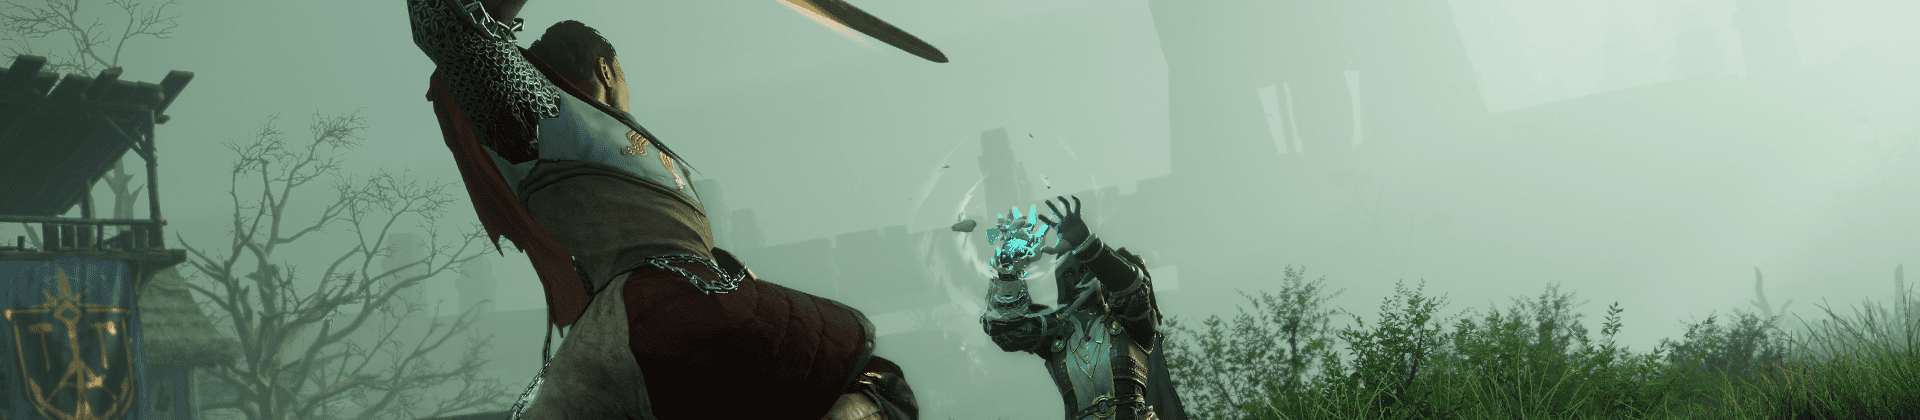 Una captura de pantalla de New World donde aparecen dos personajes retándose en duelo. El personaje de espaldas a la cámara porta una espada mientras que el otro personaje lleva la nueva manopla de hielo, con la que está lanzando un hechizo.